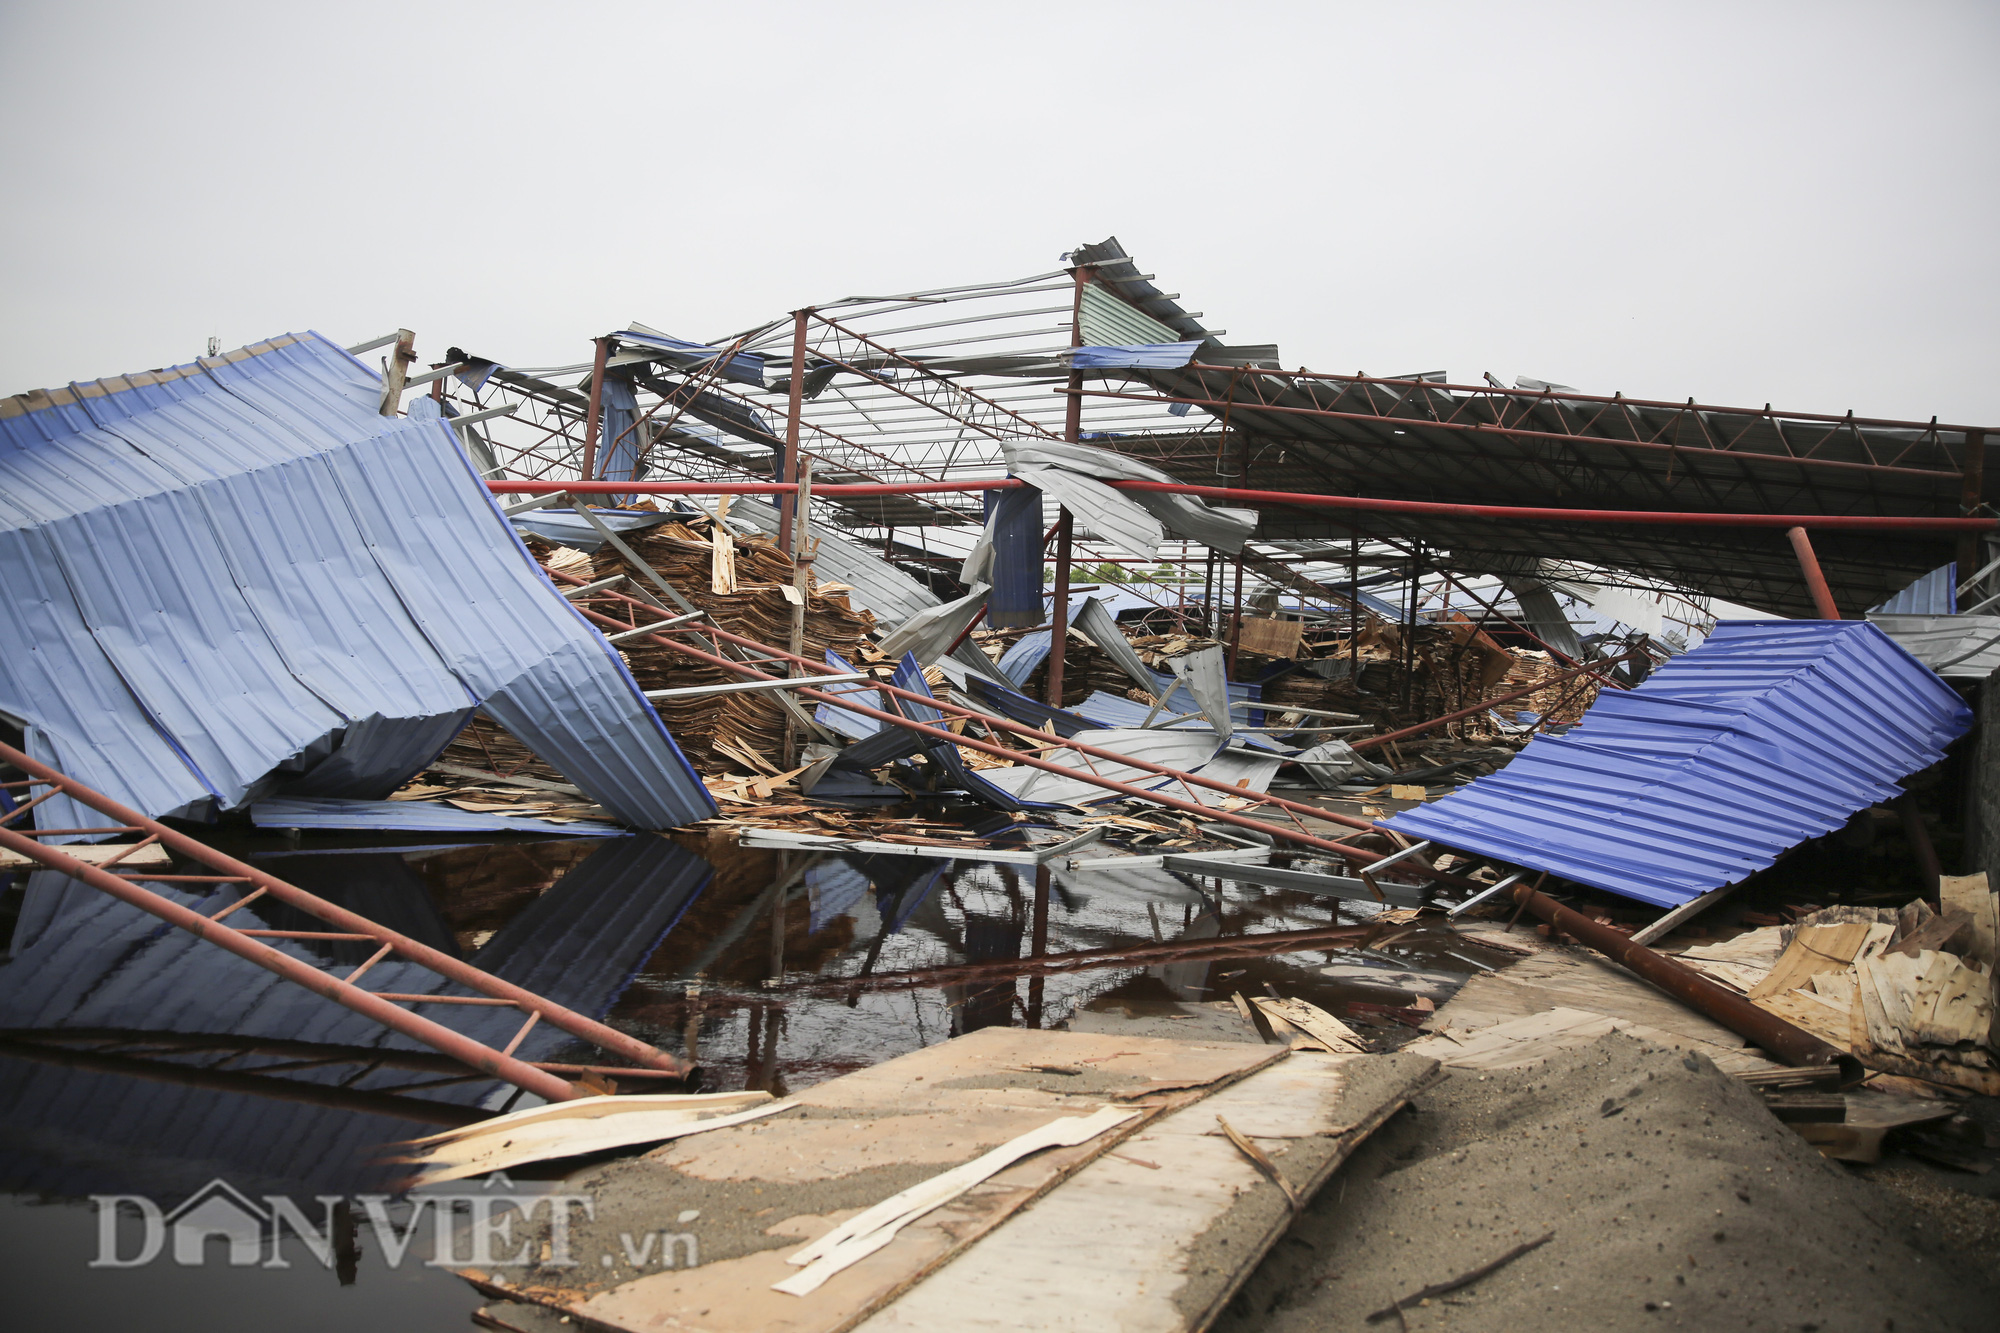 Cảnh tượng “tan hoang” sau vụ lốc xoáy làm 3 người chết tại Vĩnh Phúc - Ảnh 10.